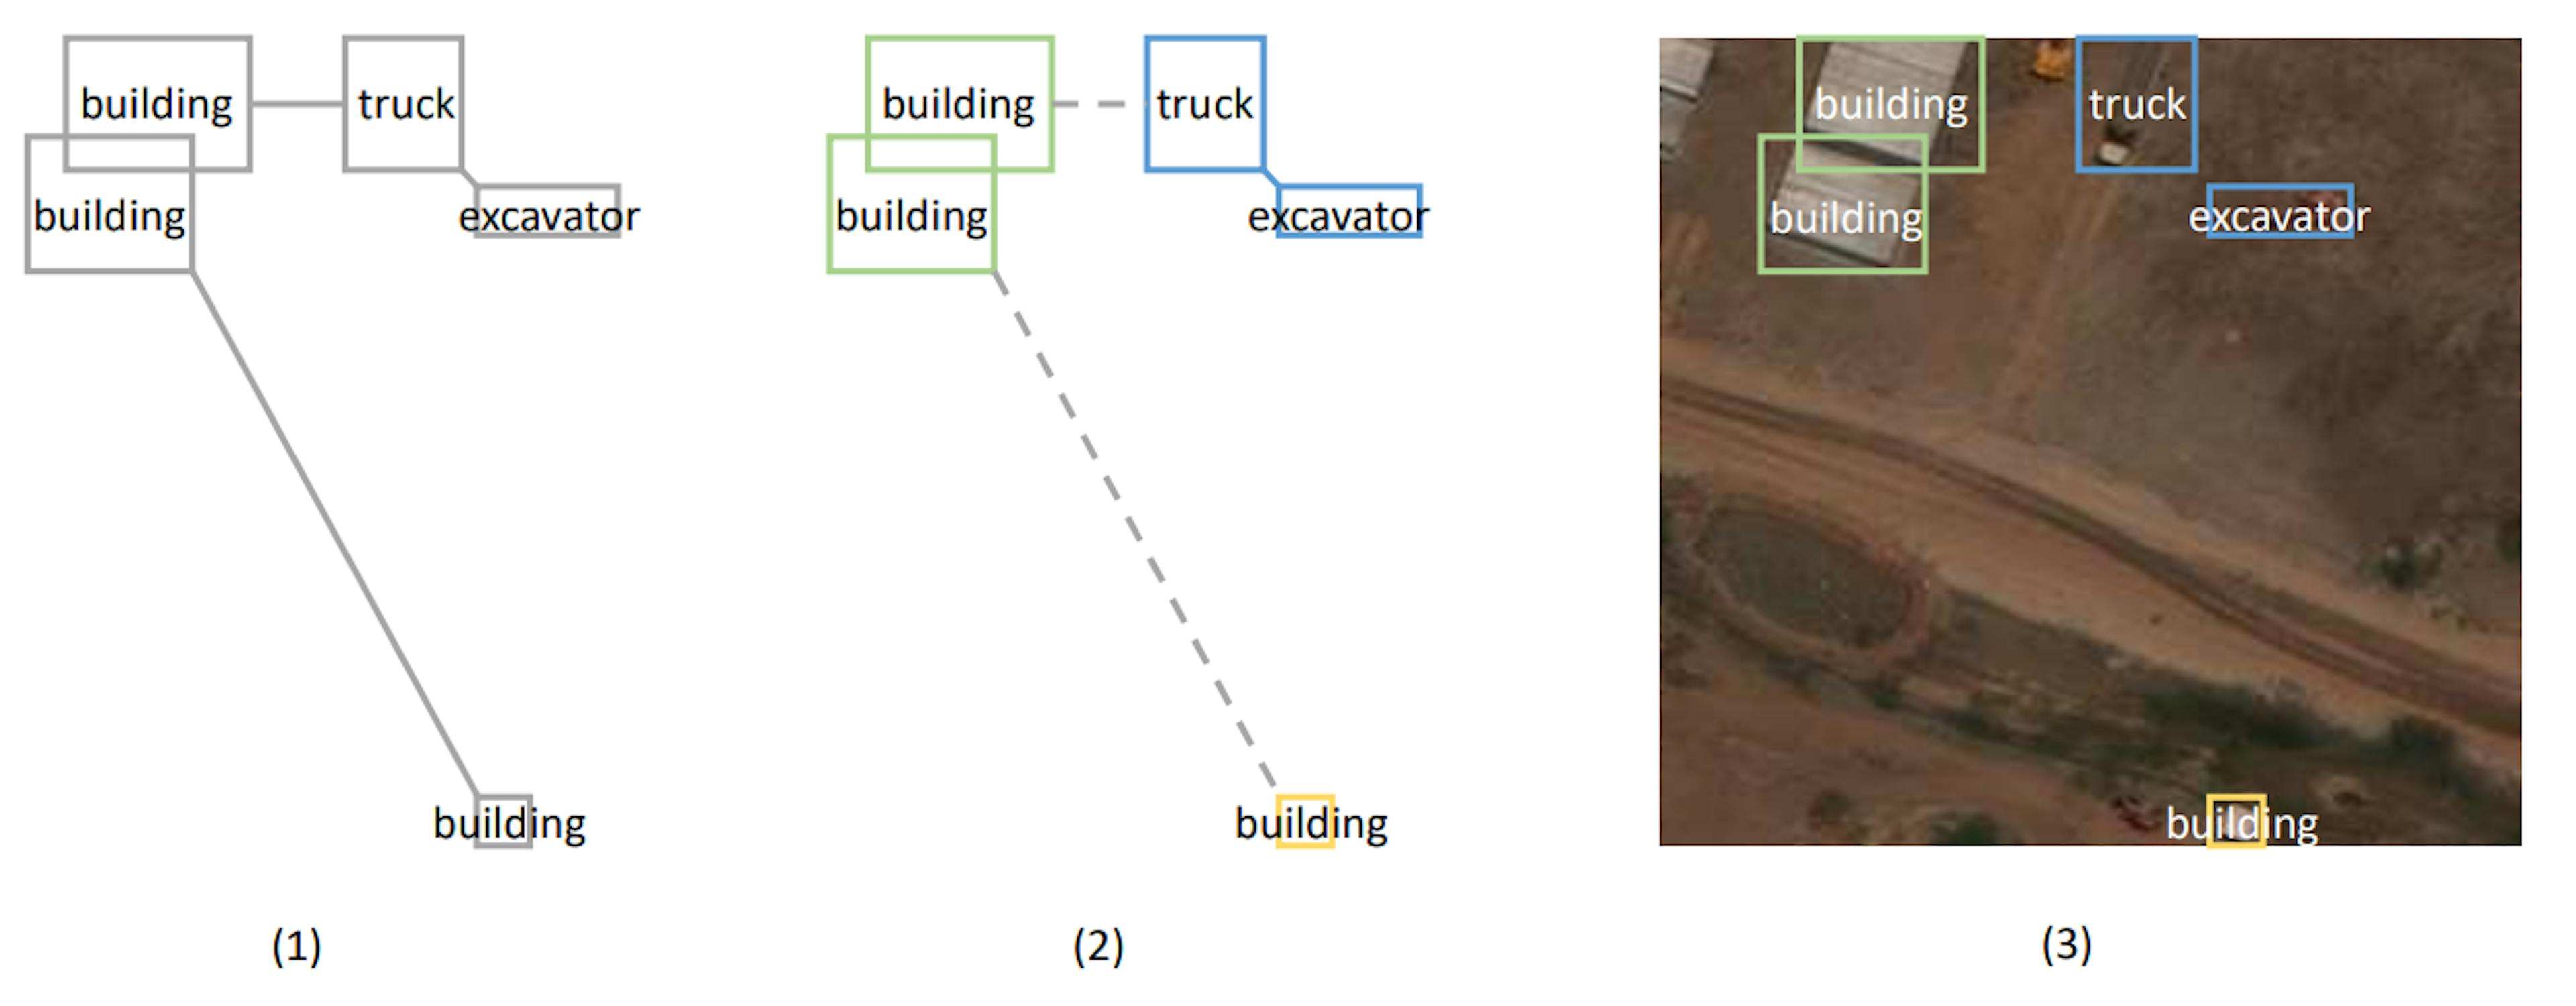 Figura 1: Ilustração do algoritmo de clustering baseado em MST. A Figura (1) demonstra o gráfico criado representando a árvore geradora mínima. O comprimento extra é adicionado à distância entre objetos de diferentes tipos. A Figura (2) mostra os aglomerados formados pelo corte de arestas longas. A Figura (3) projeta a localização dos objetos na imagem real.